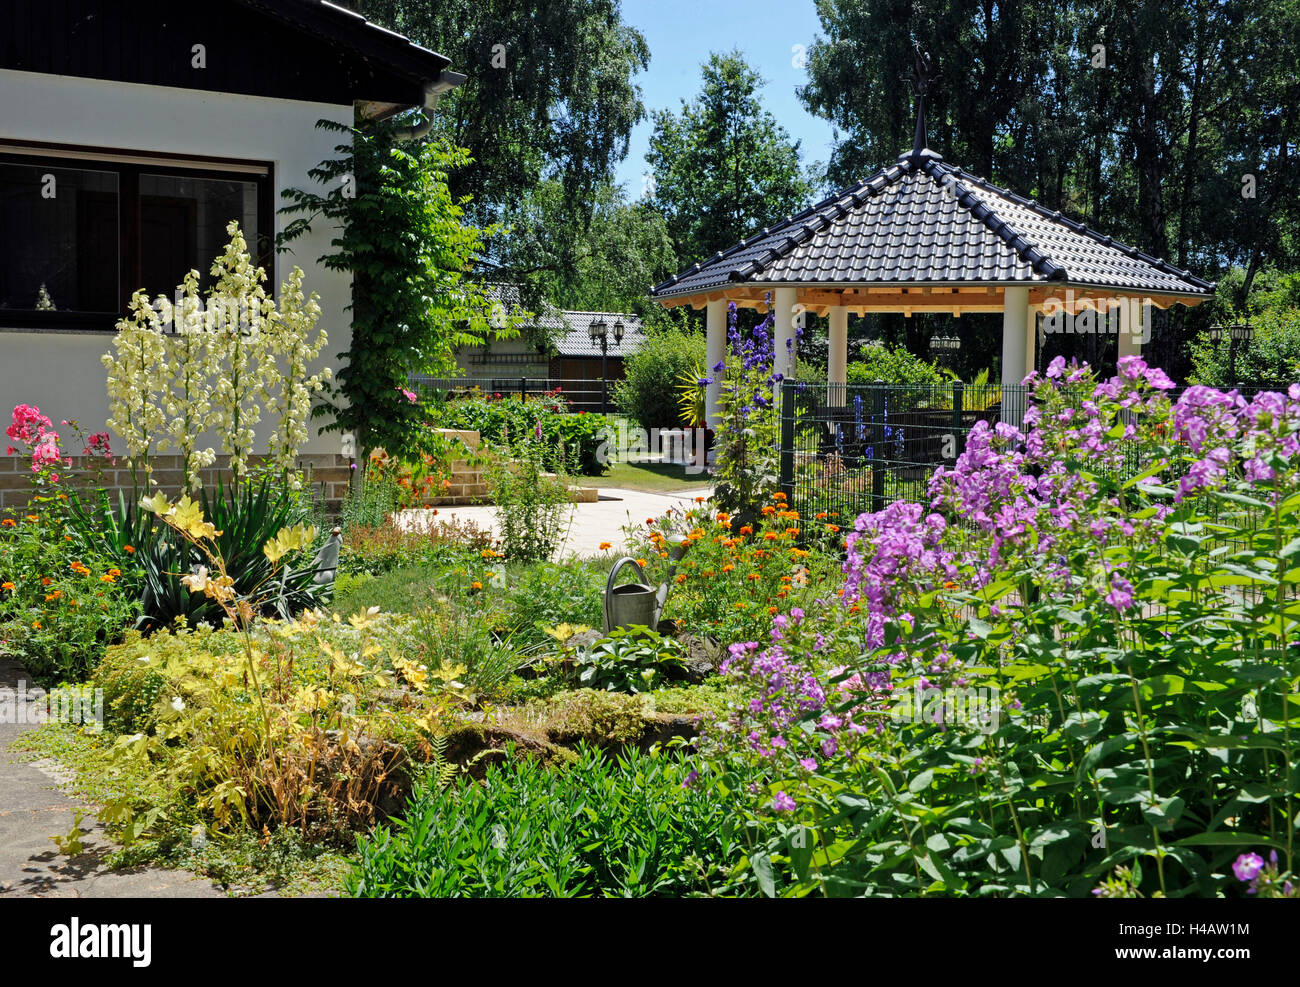 Casa jardín con arbustos florecientes, pabellón del jardín en el fondo, Foto de stock